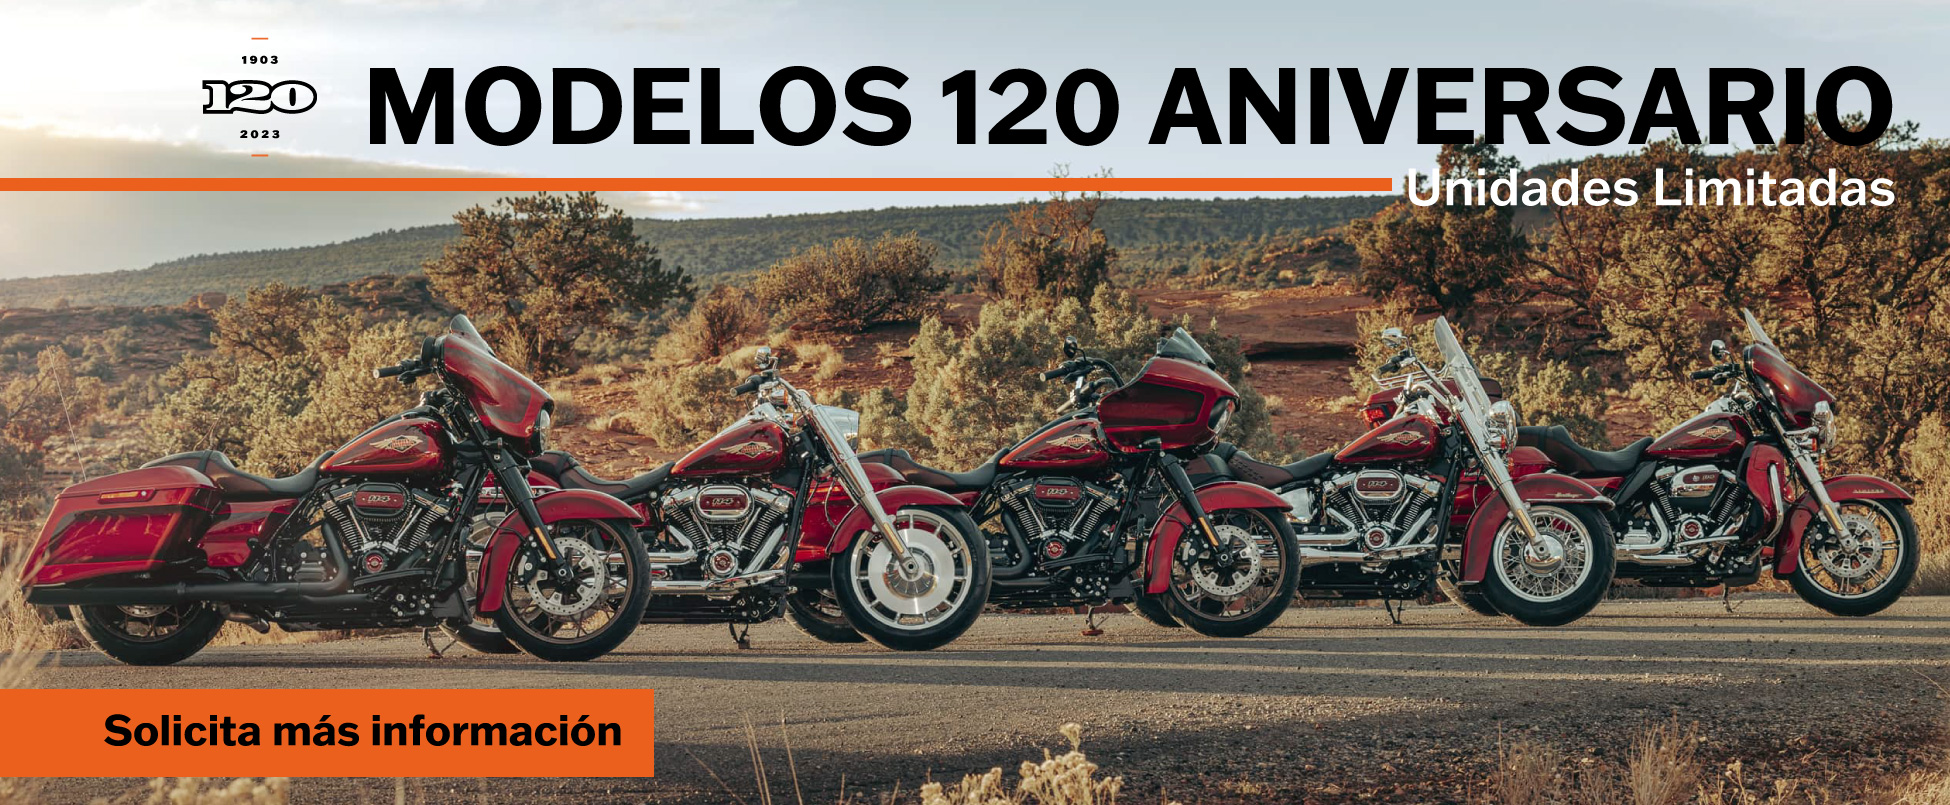 Nuevos modelos conmemorativos del 120 Aniversario de Harley-Davidson ¡Infórmate en nuestro concesionario!